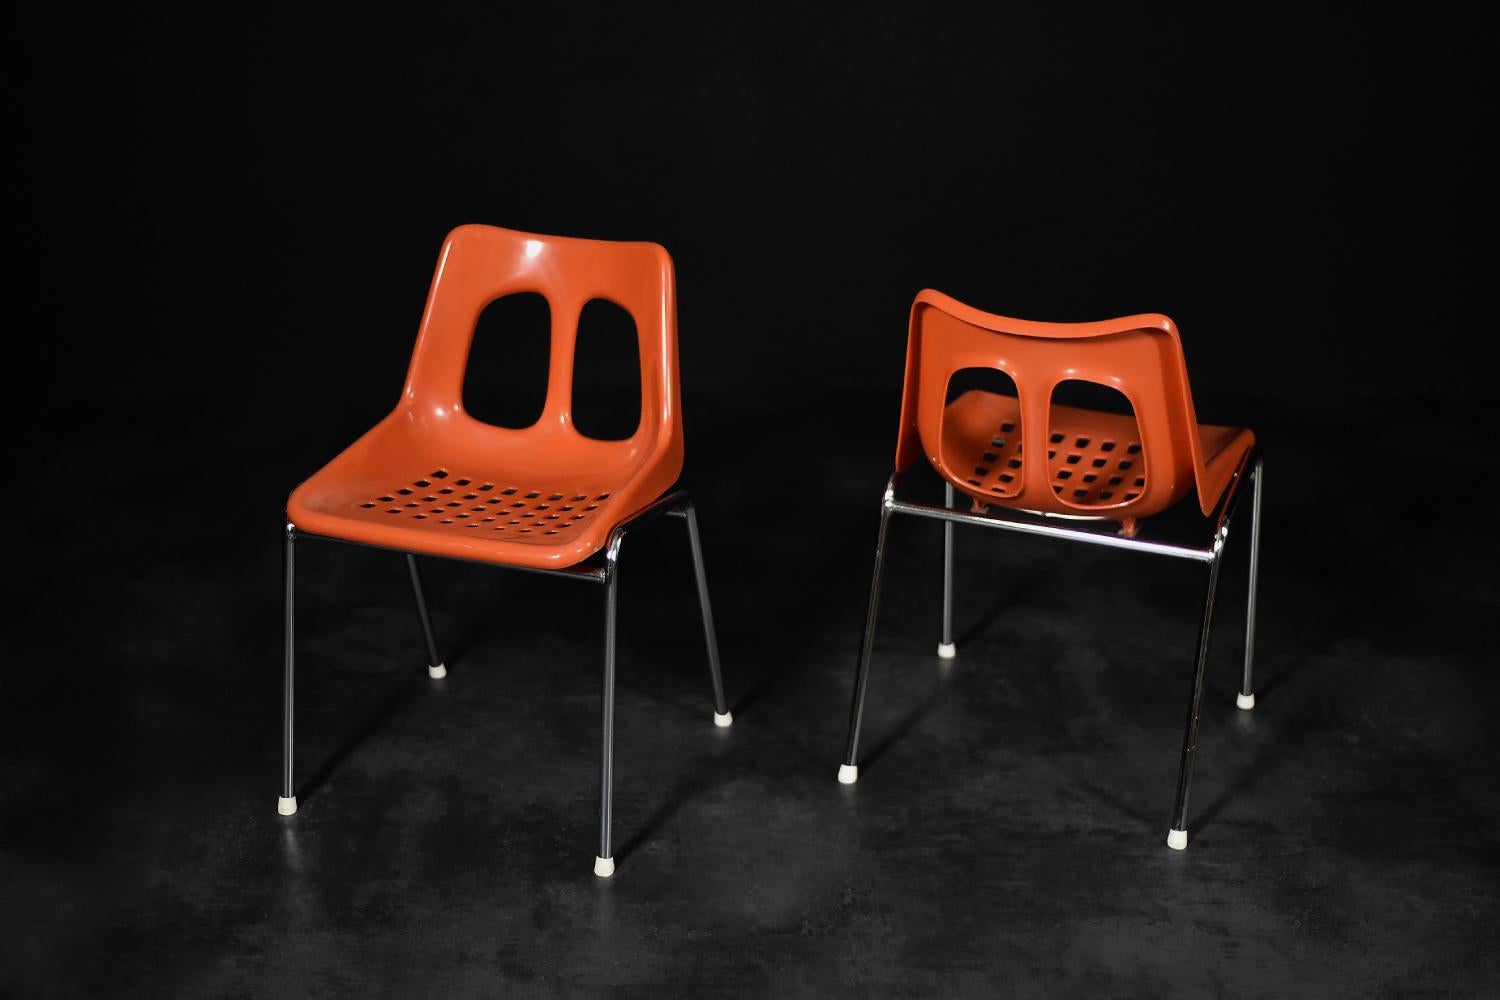 Cette paire de chaises modernistes a été produite par l'usine israélienne Plasson dans les années 1960. L'assise et le dossier sont en plastique moulé de couleur rouge-orange. Les pieds élancés sont en métal chromé. Les chaises sont très